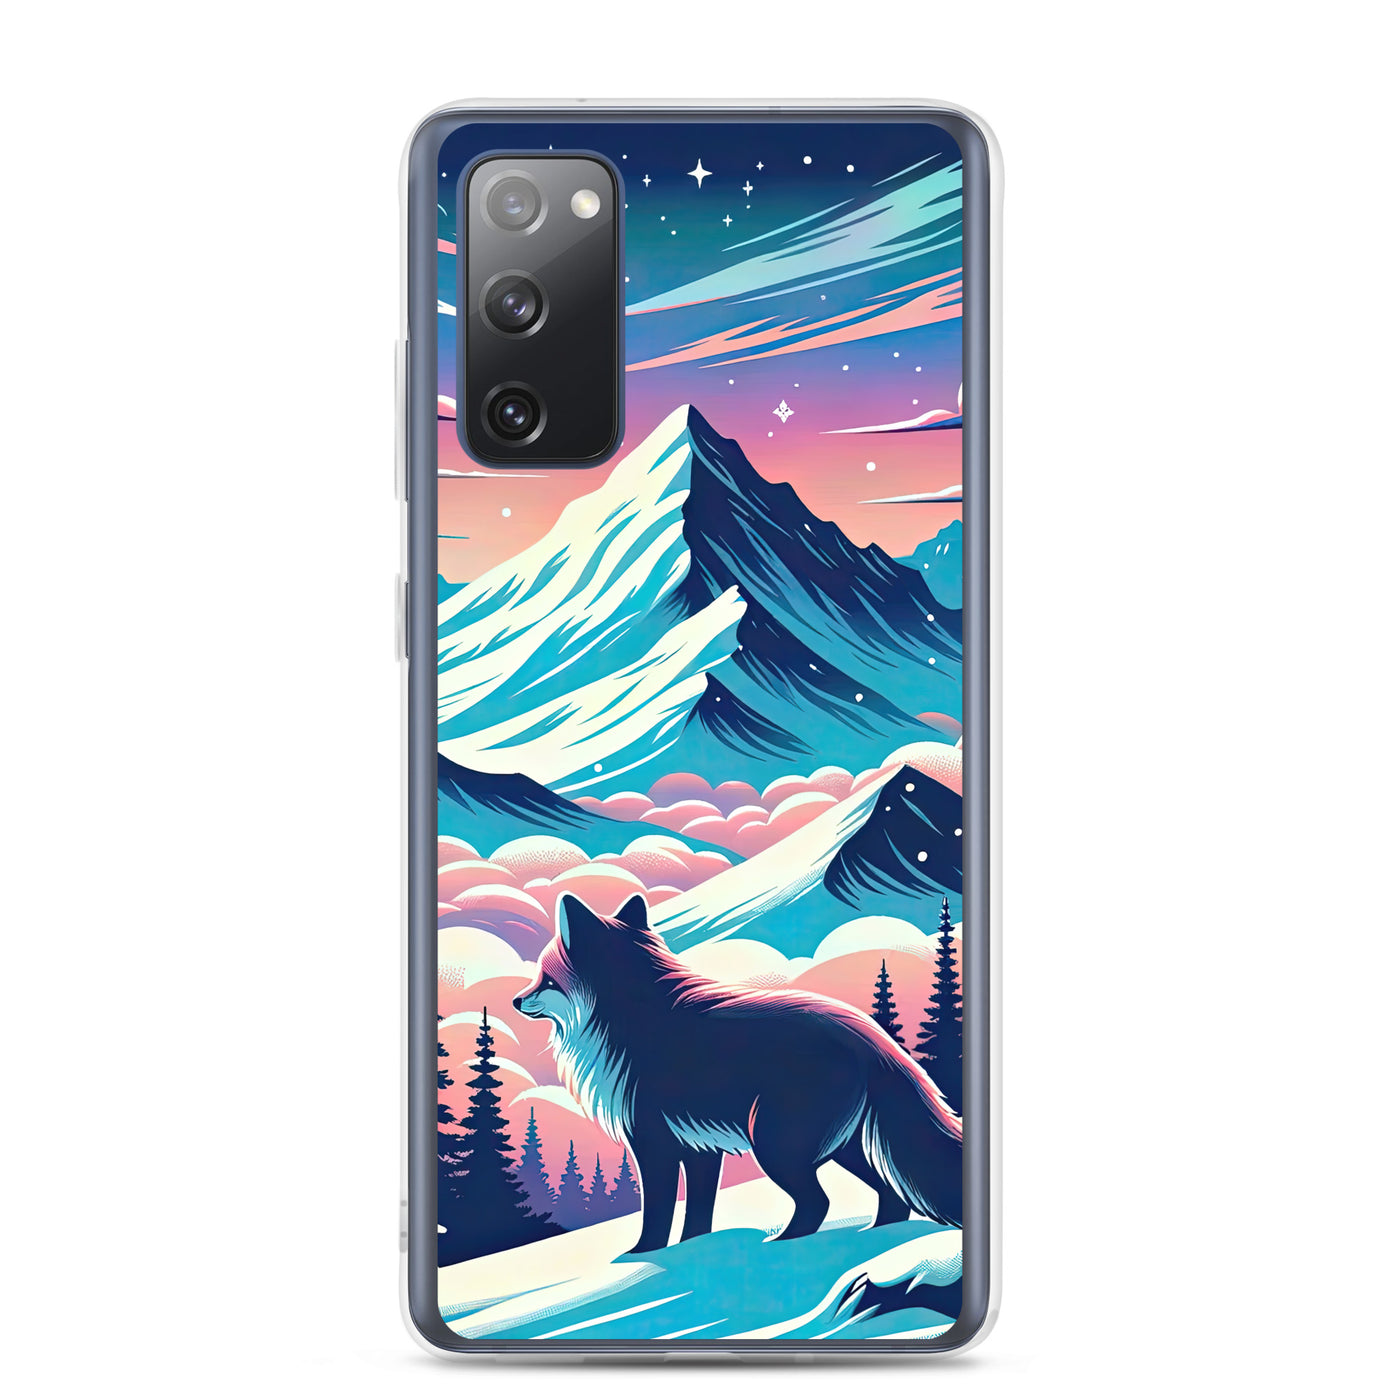 Vektorgrafik eines alpinen Winterwunderlandes mit schneebedeckten Kiefern und einem Fuchs - Samsung Schutzhülle (durchsichtig) camping xxx yyy zzz Samsung Galaxy S20 FE